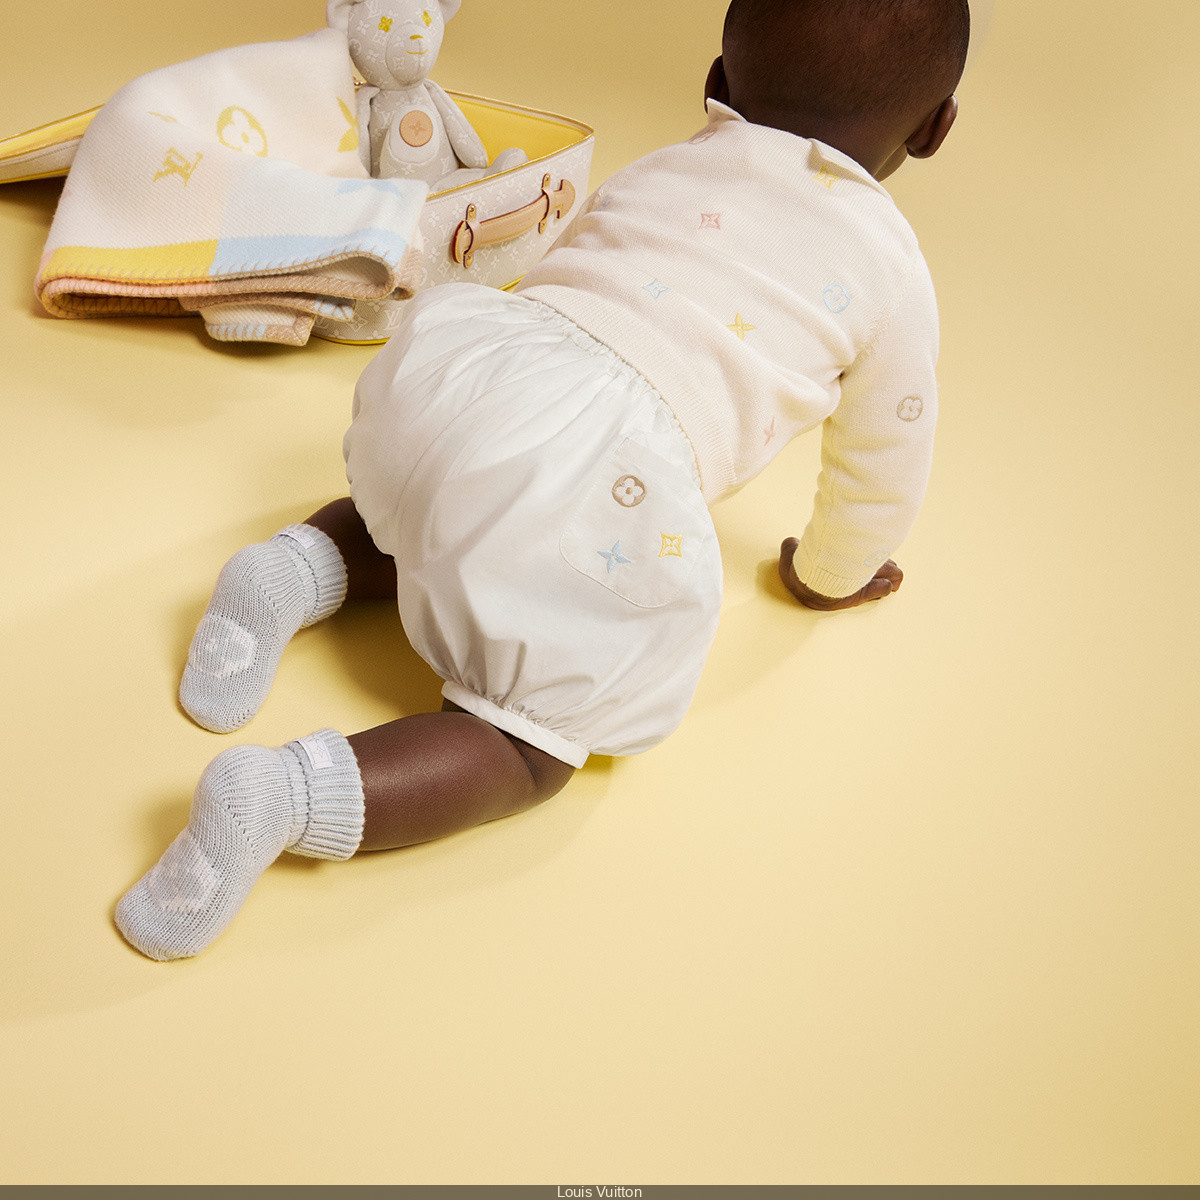 Louis Vuitton lanza su primera línea de ropa para bebés